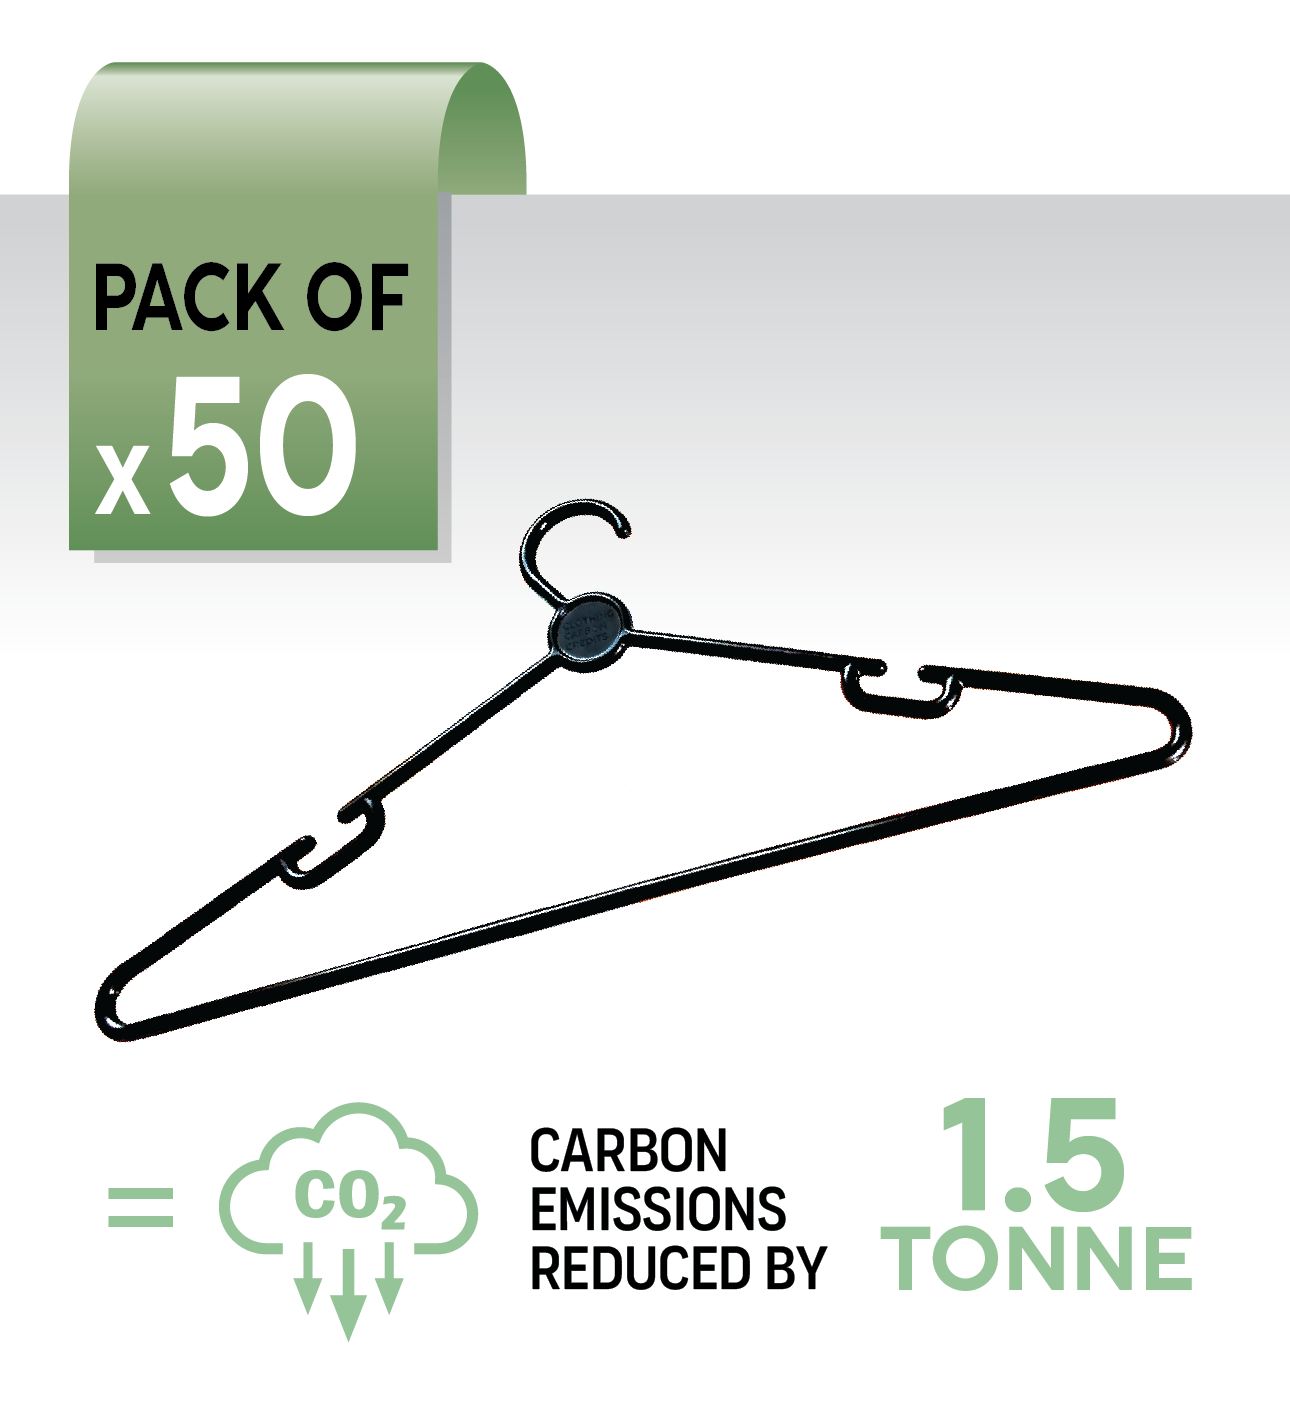 50 hangers - offset 1500kg carbon emissions